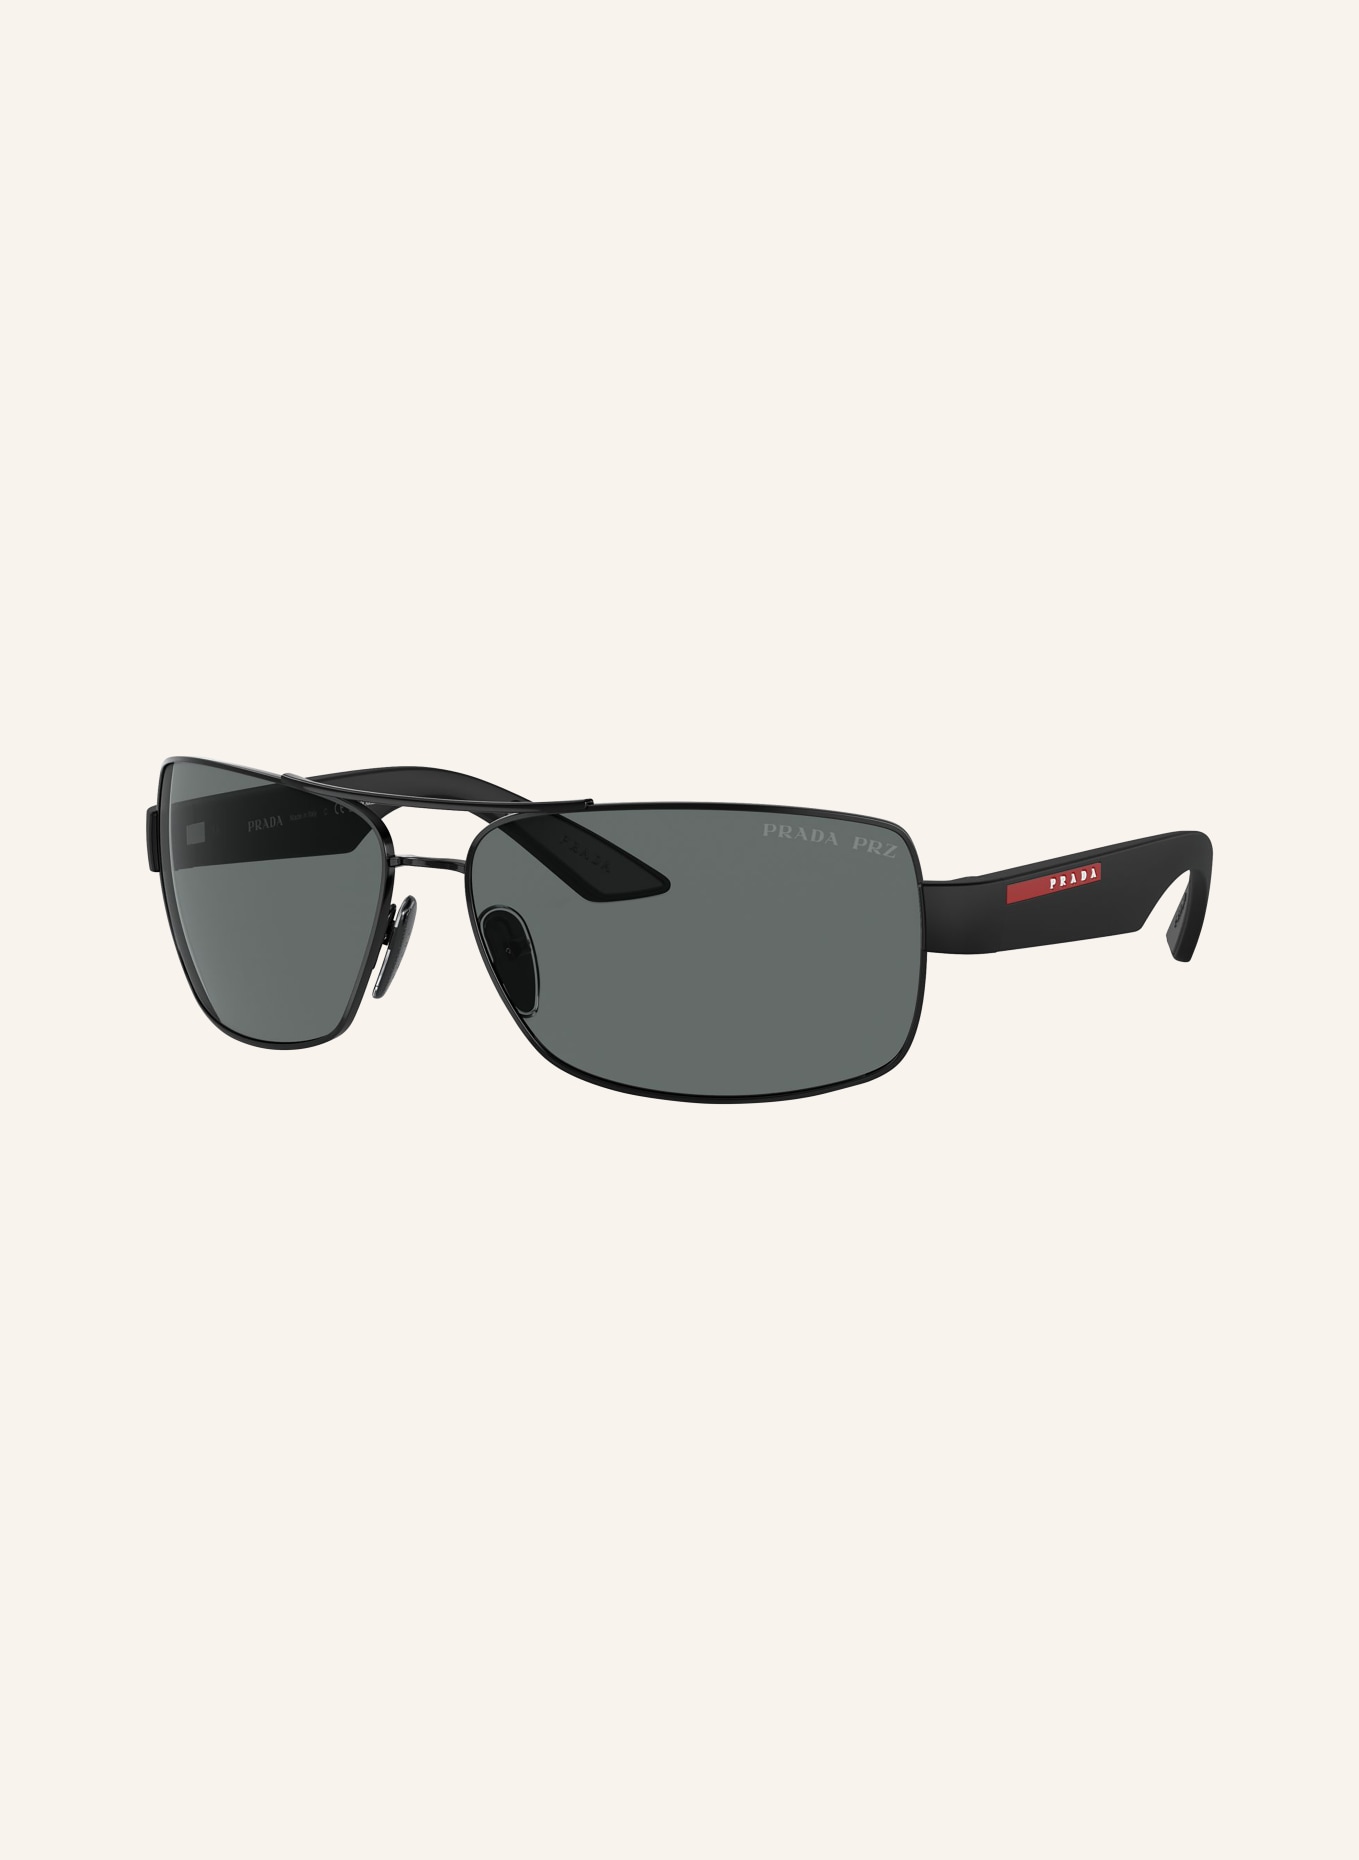 PRADA LINEA ROSSA Sunglasses PS 50ZS, Color: 1AB02G - BLACK/GRAY POLARIZED (Image 1)